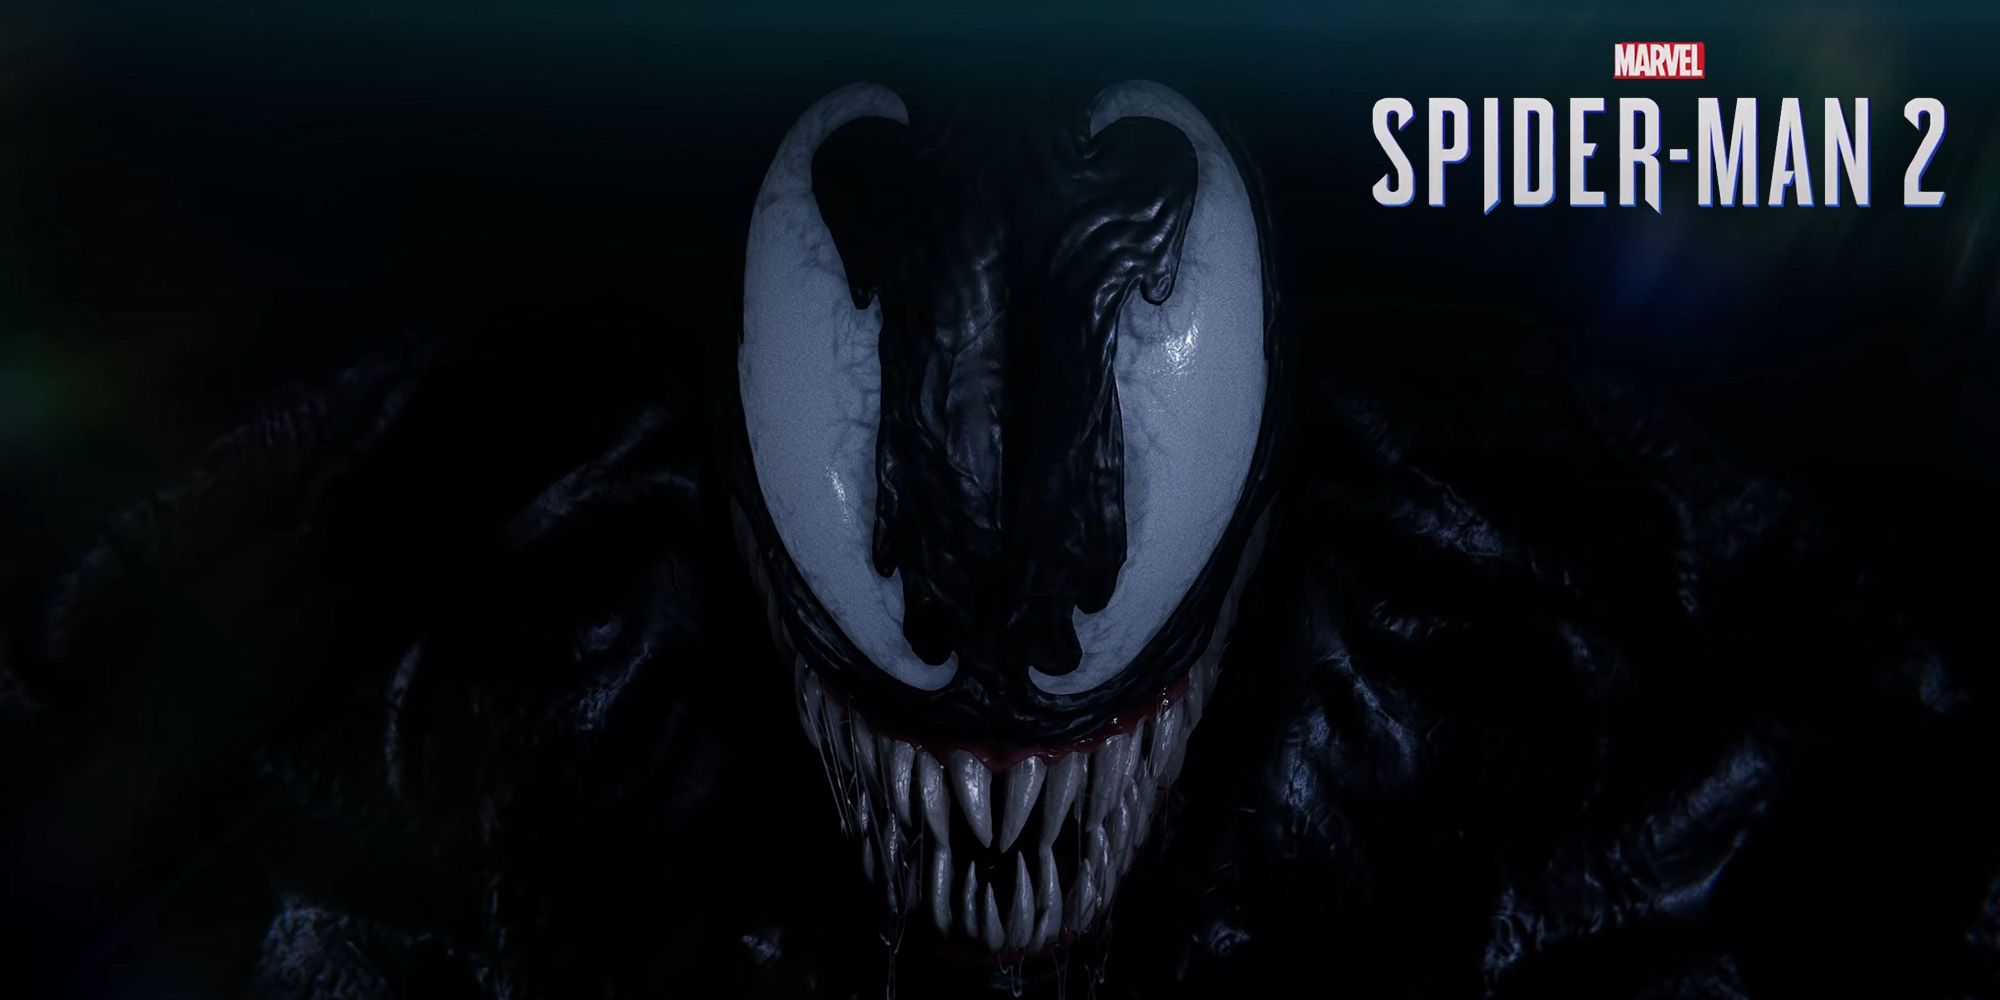 Close up on Venom from Spider-Man 2 trailer.